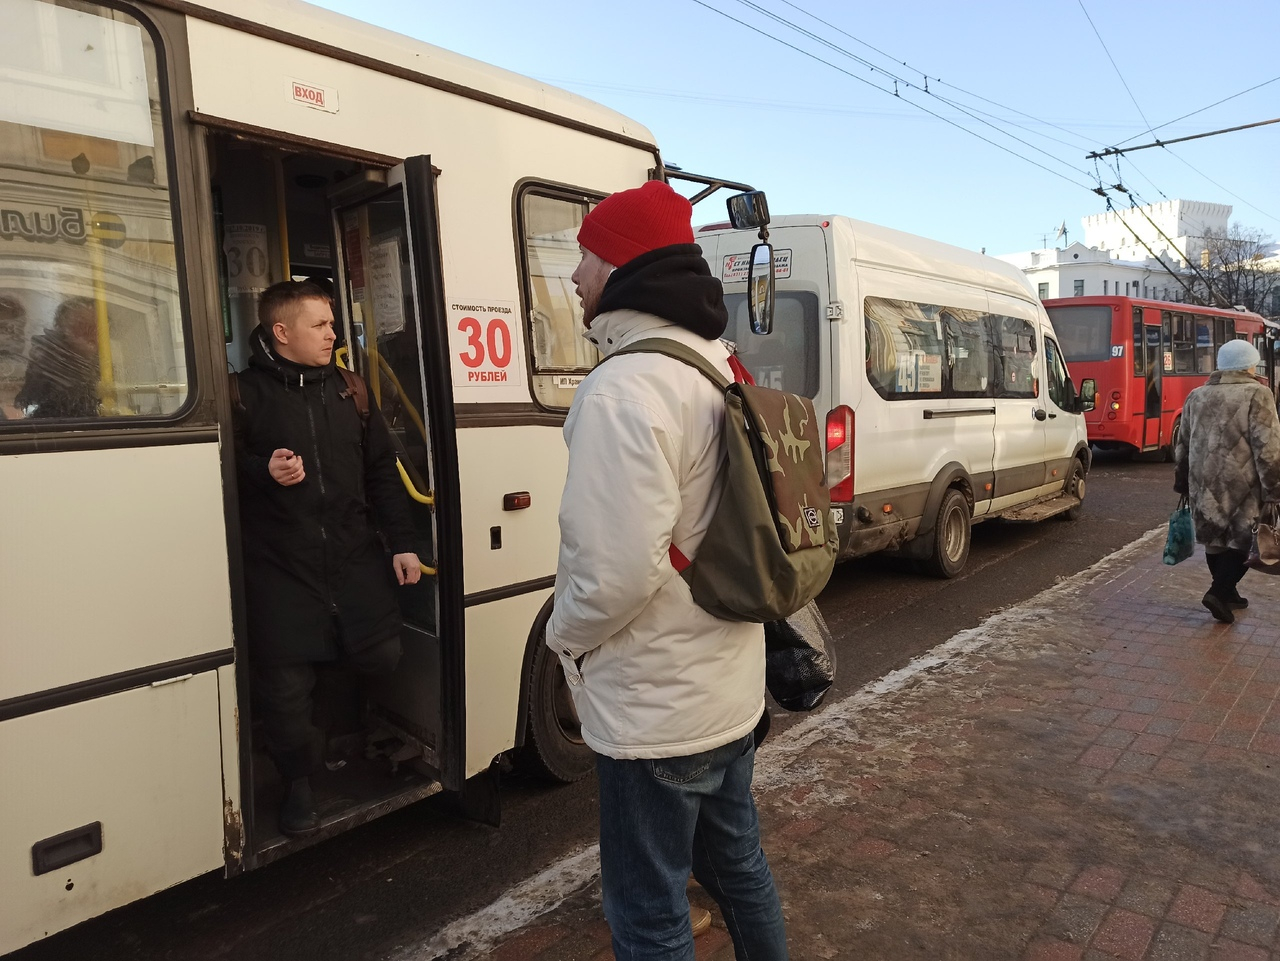 Пусть за проезд платит кондуктор: подробности скандала в ярославской маршрутке